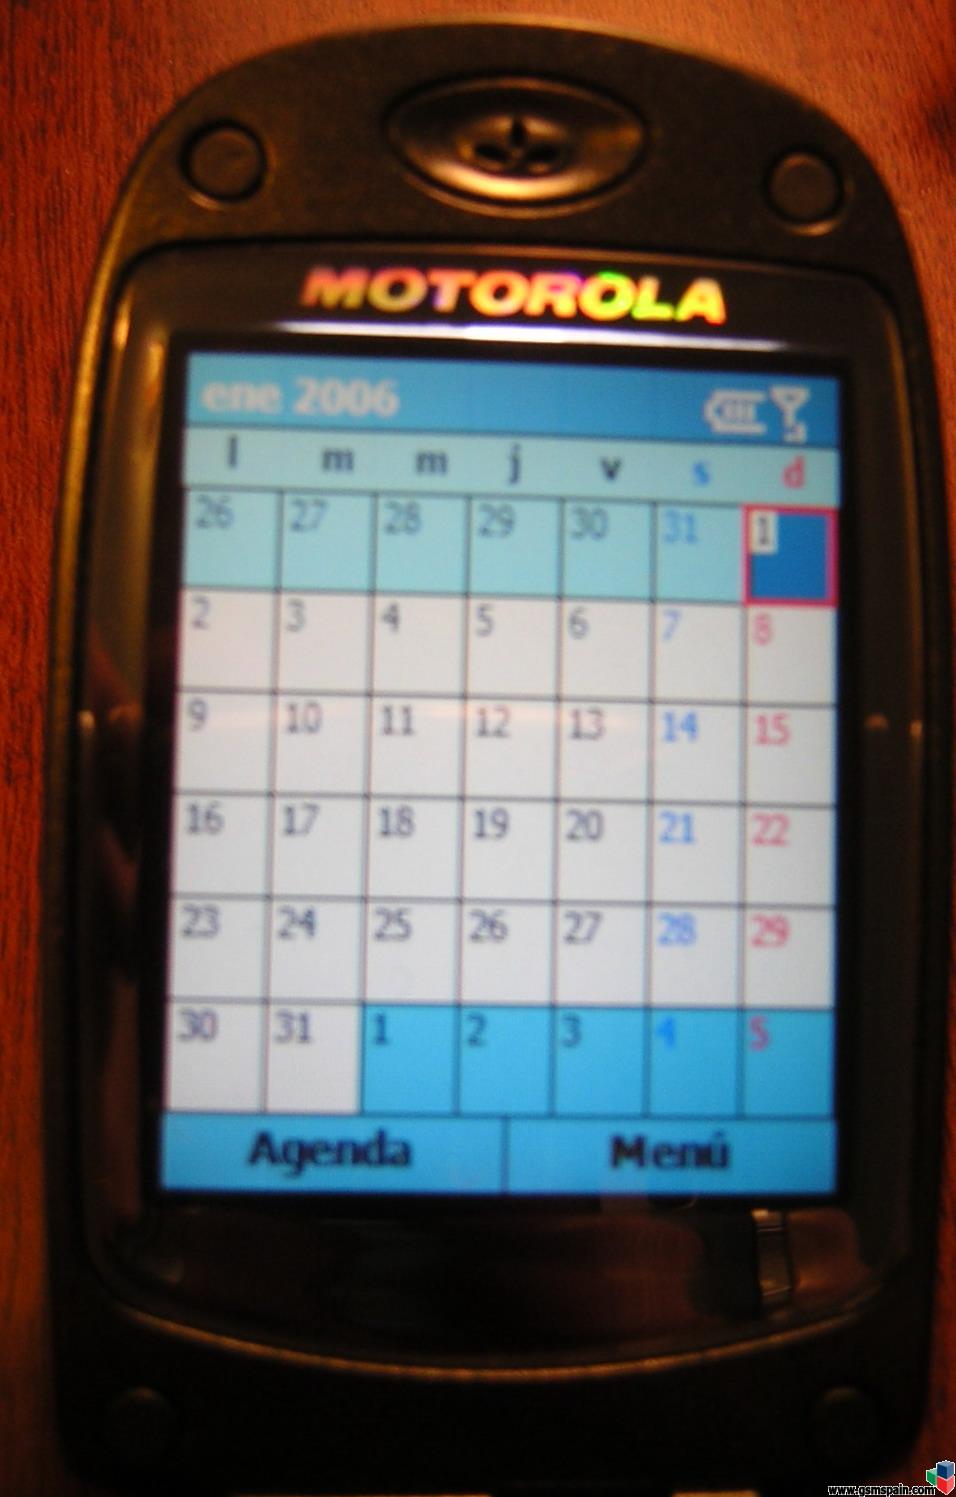 *** Motorola MPX200 Libre + SD128 (Muuuchas fotos) ***